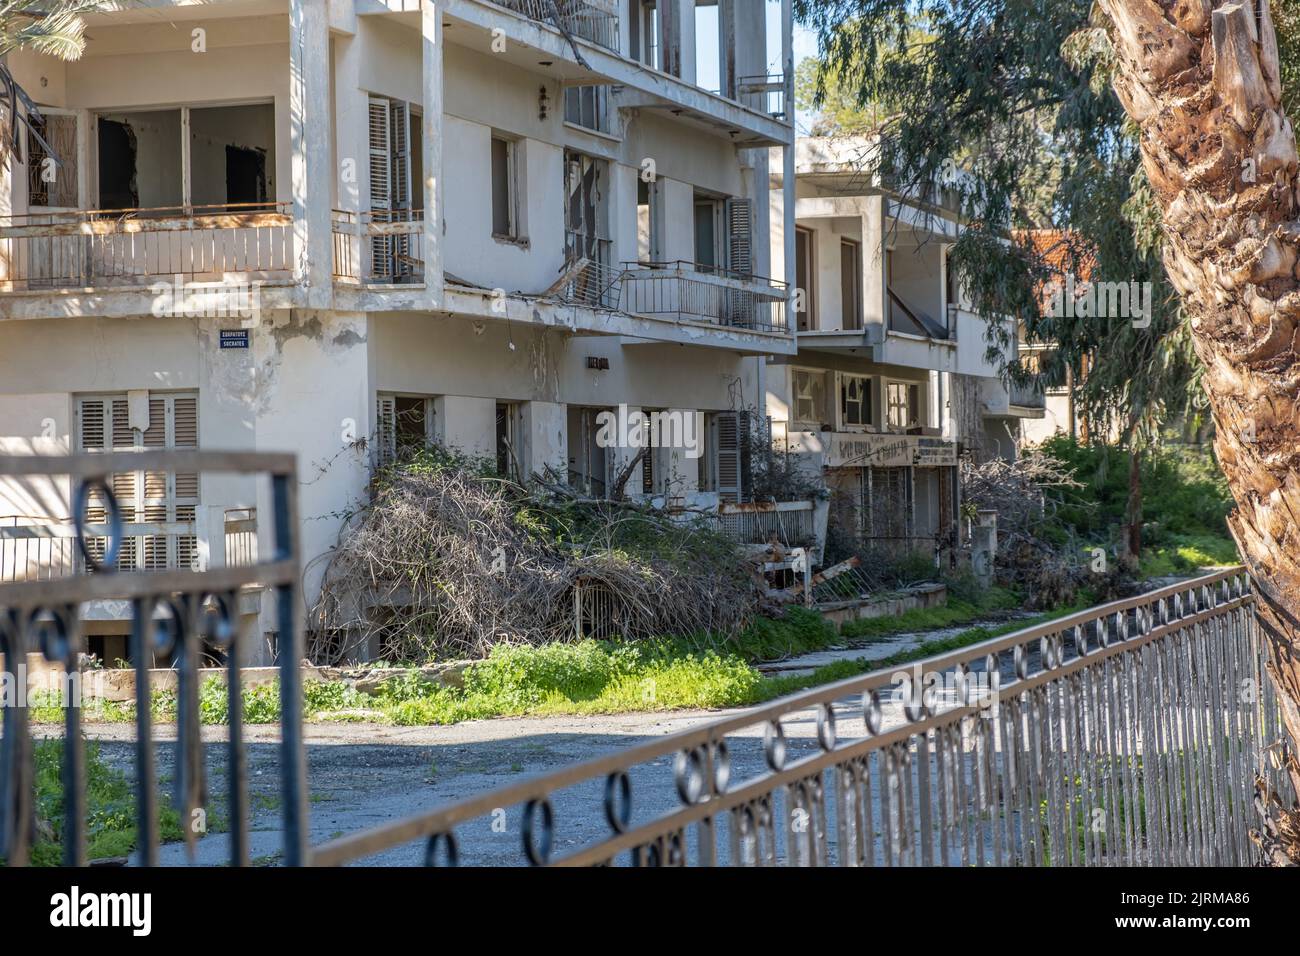 Varosha, Famagosta, Cipro - Giugno 2021: La città abbandonata, città fantasma, il nome locale è 'Kapali Maras'. Foto Stock